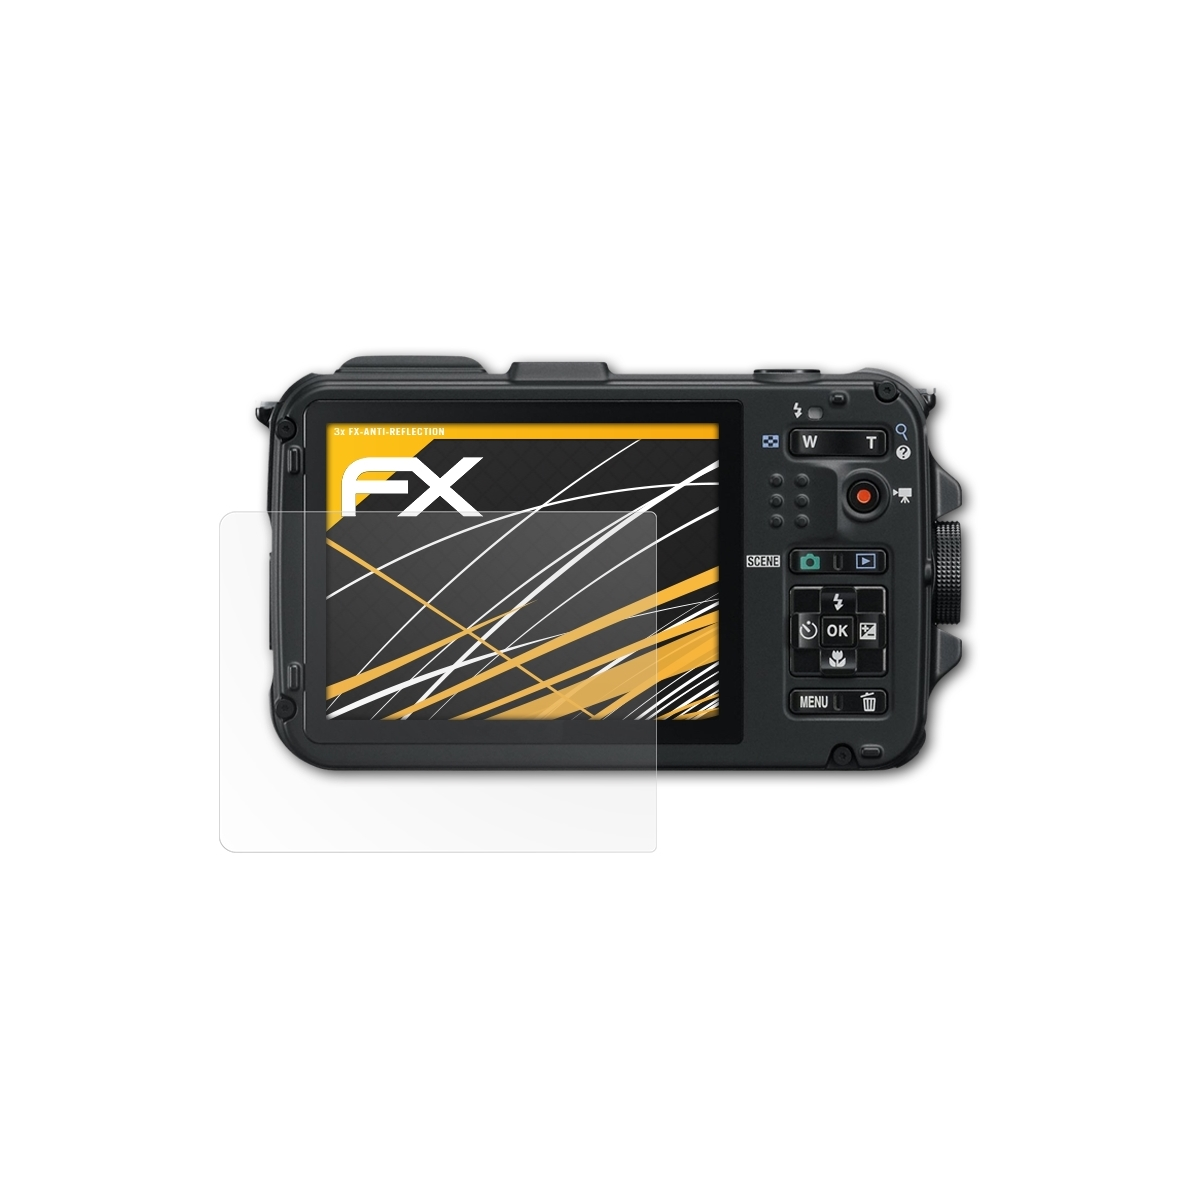 ATFOLIX 3x Nikon FX-Antireflex AW100) Coolpix Displayschutz(für